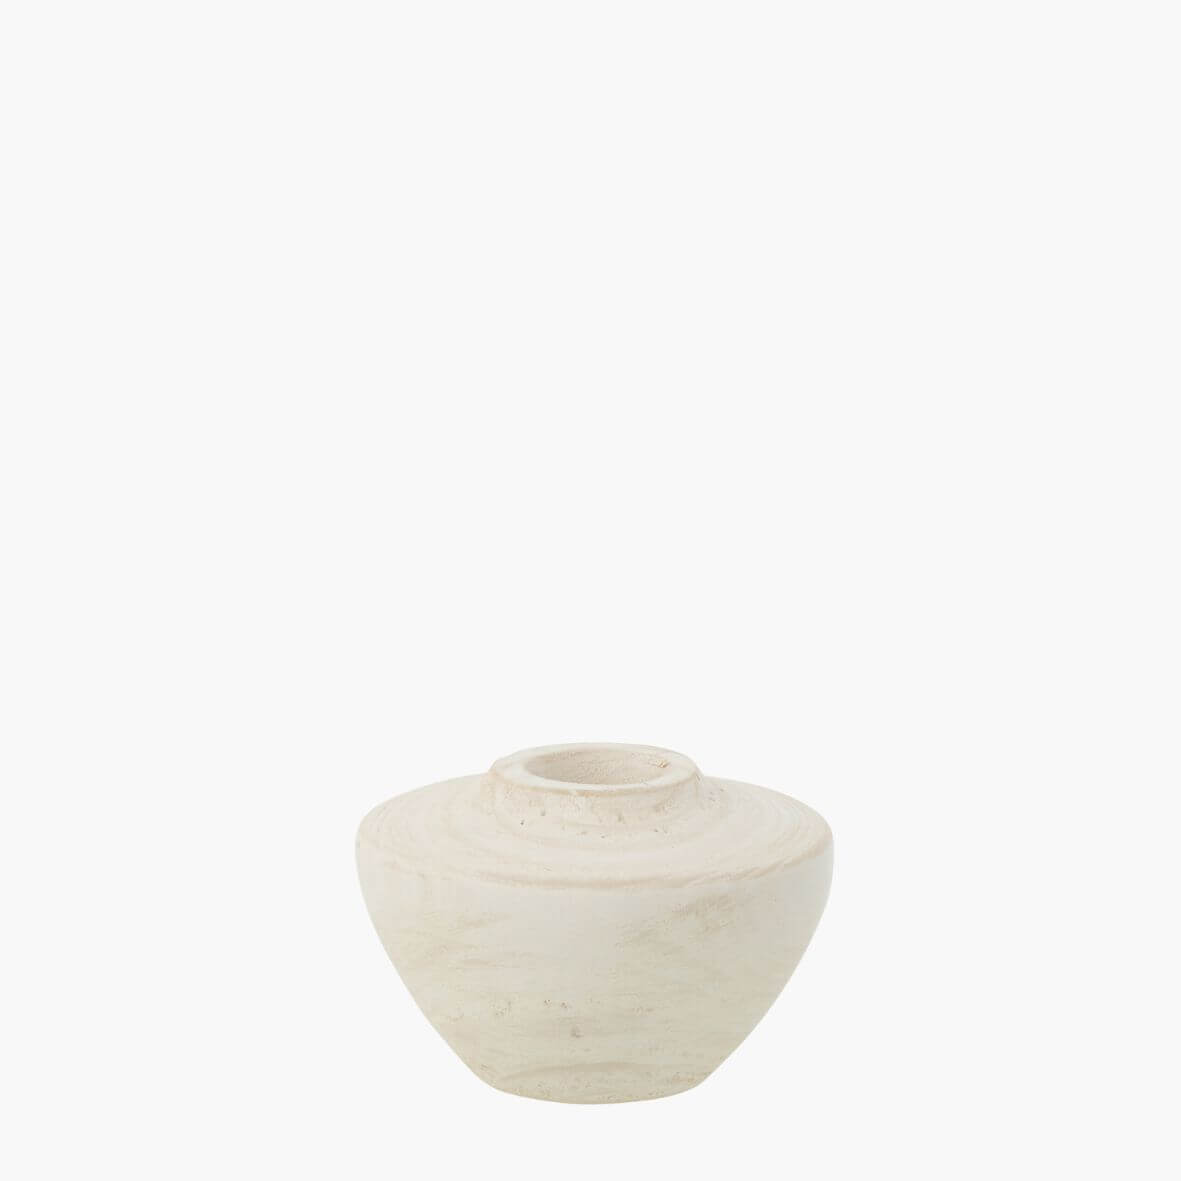 Whitewood curved vase on white background